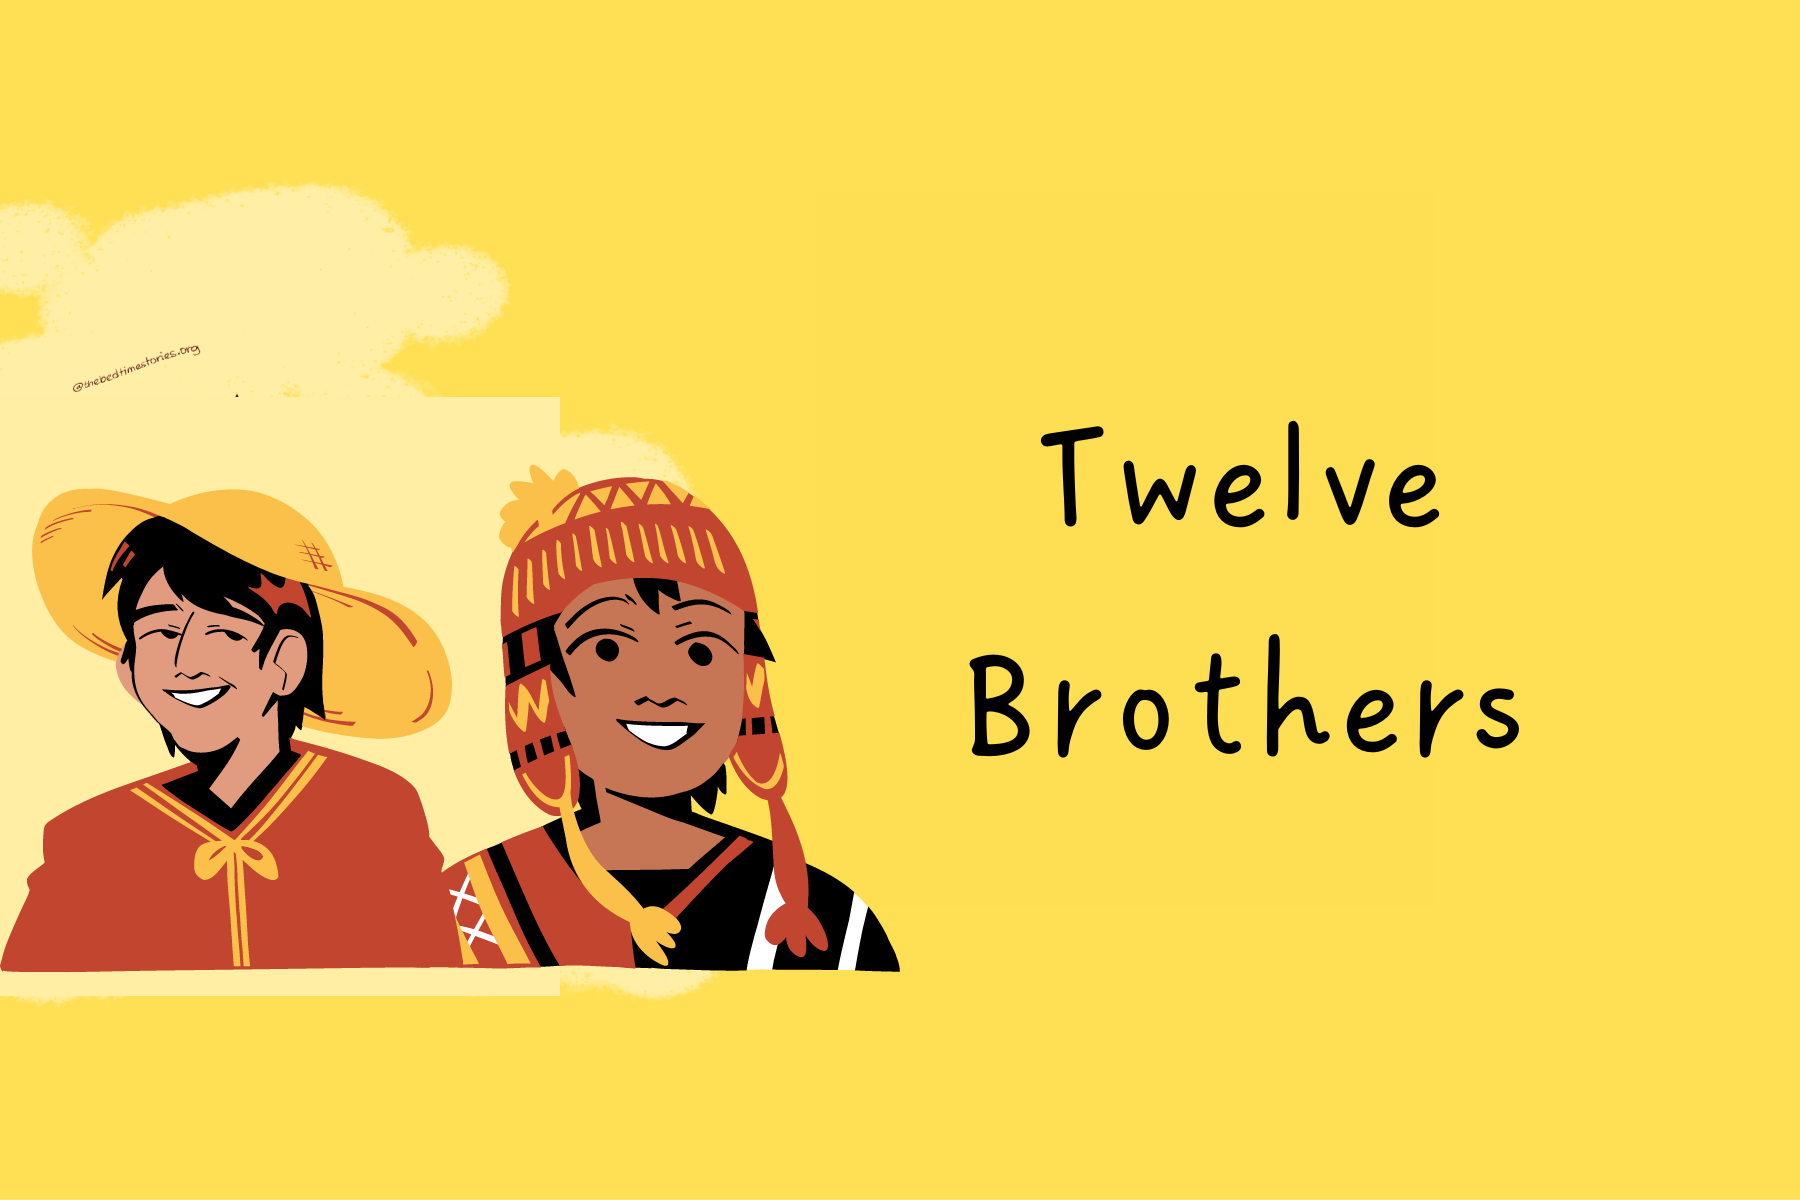 Twelve Brothers: Top 10 Unique Stories For Children